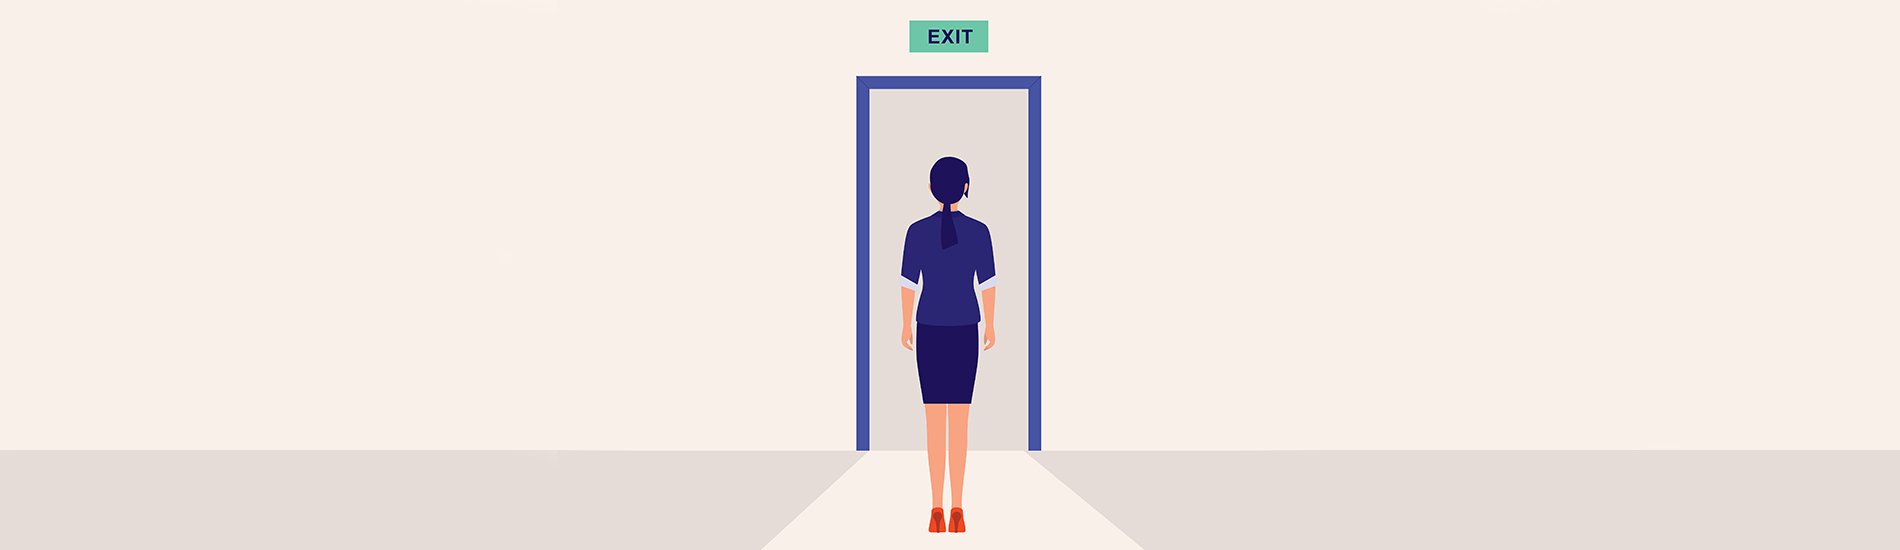 Illustration of employee standing in front of an exit door